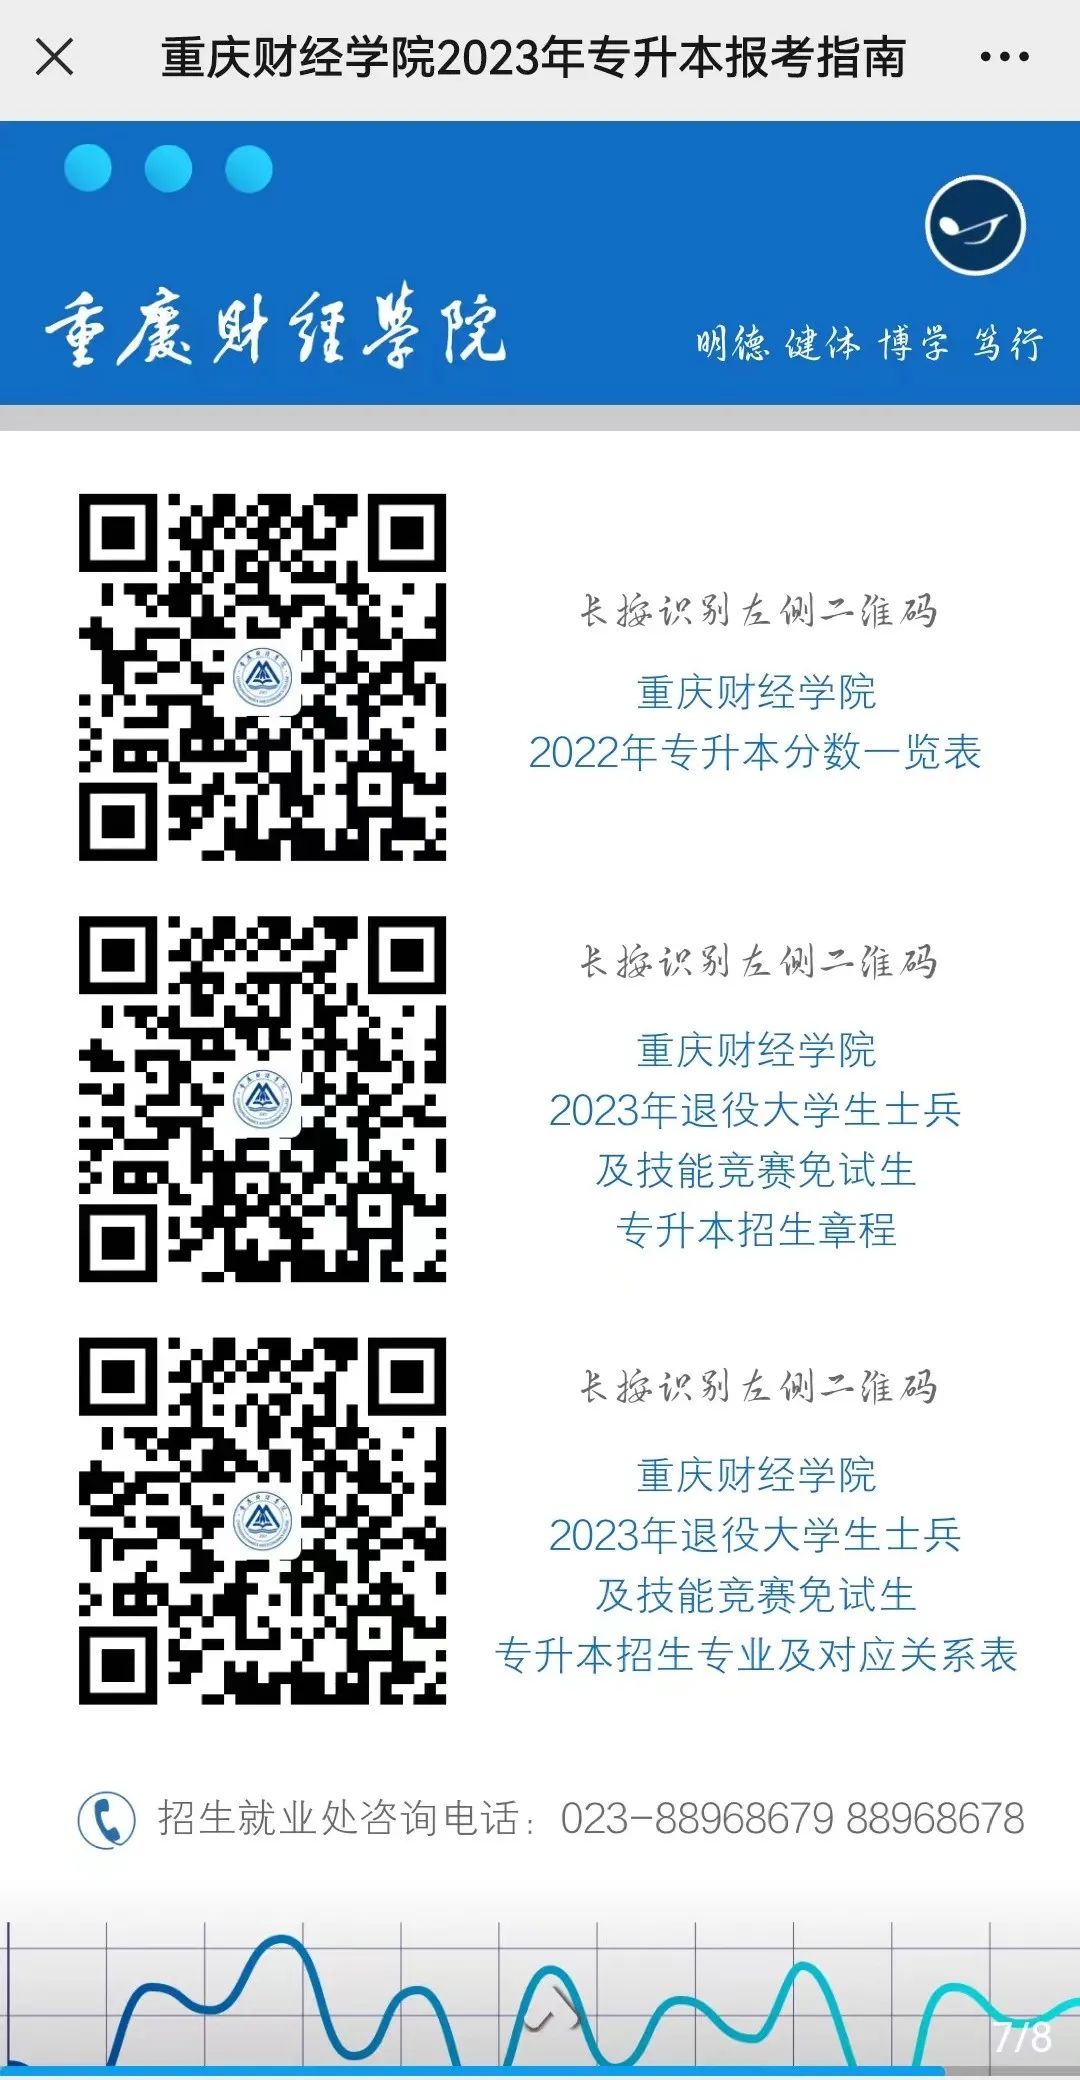 2023年重庆财经学院专升本报考指南公布